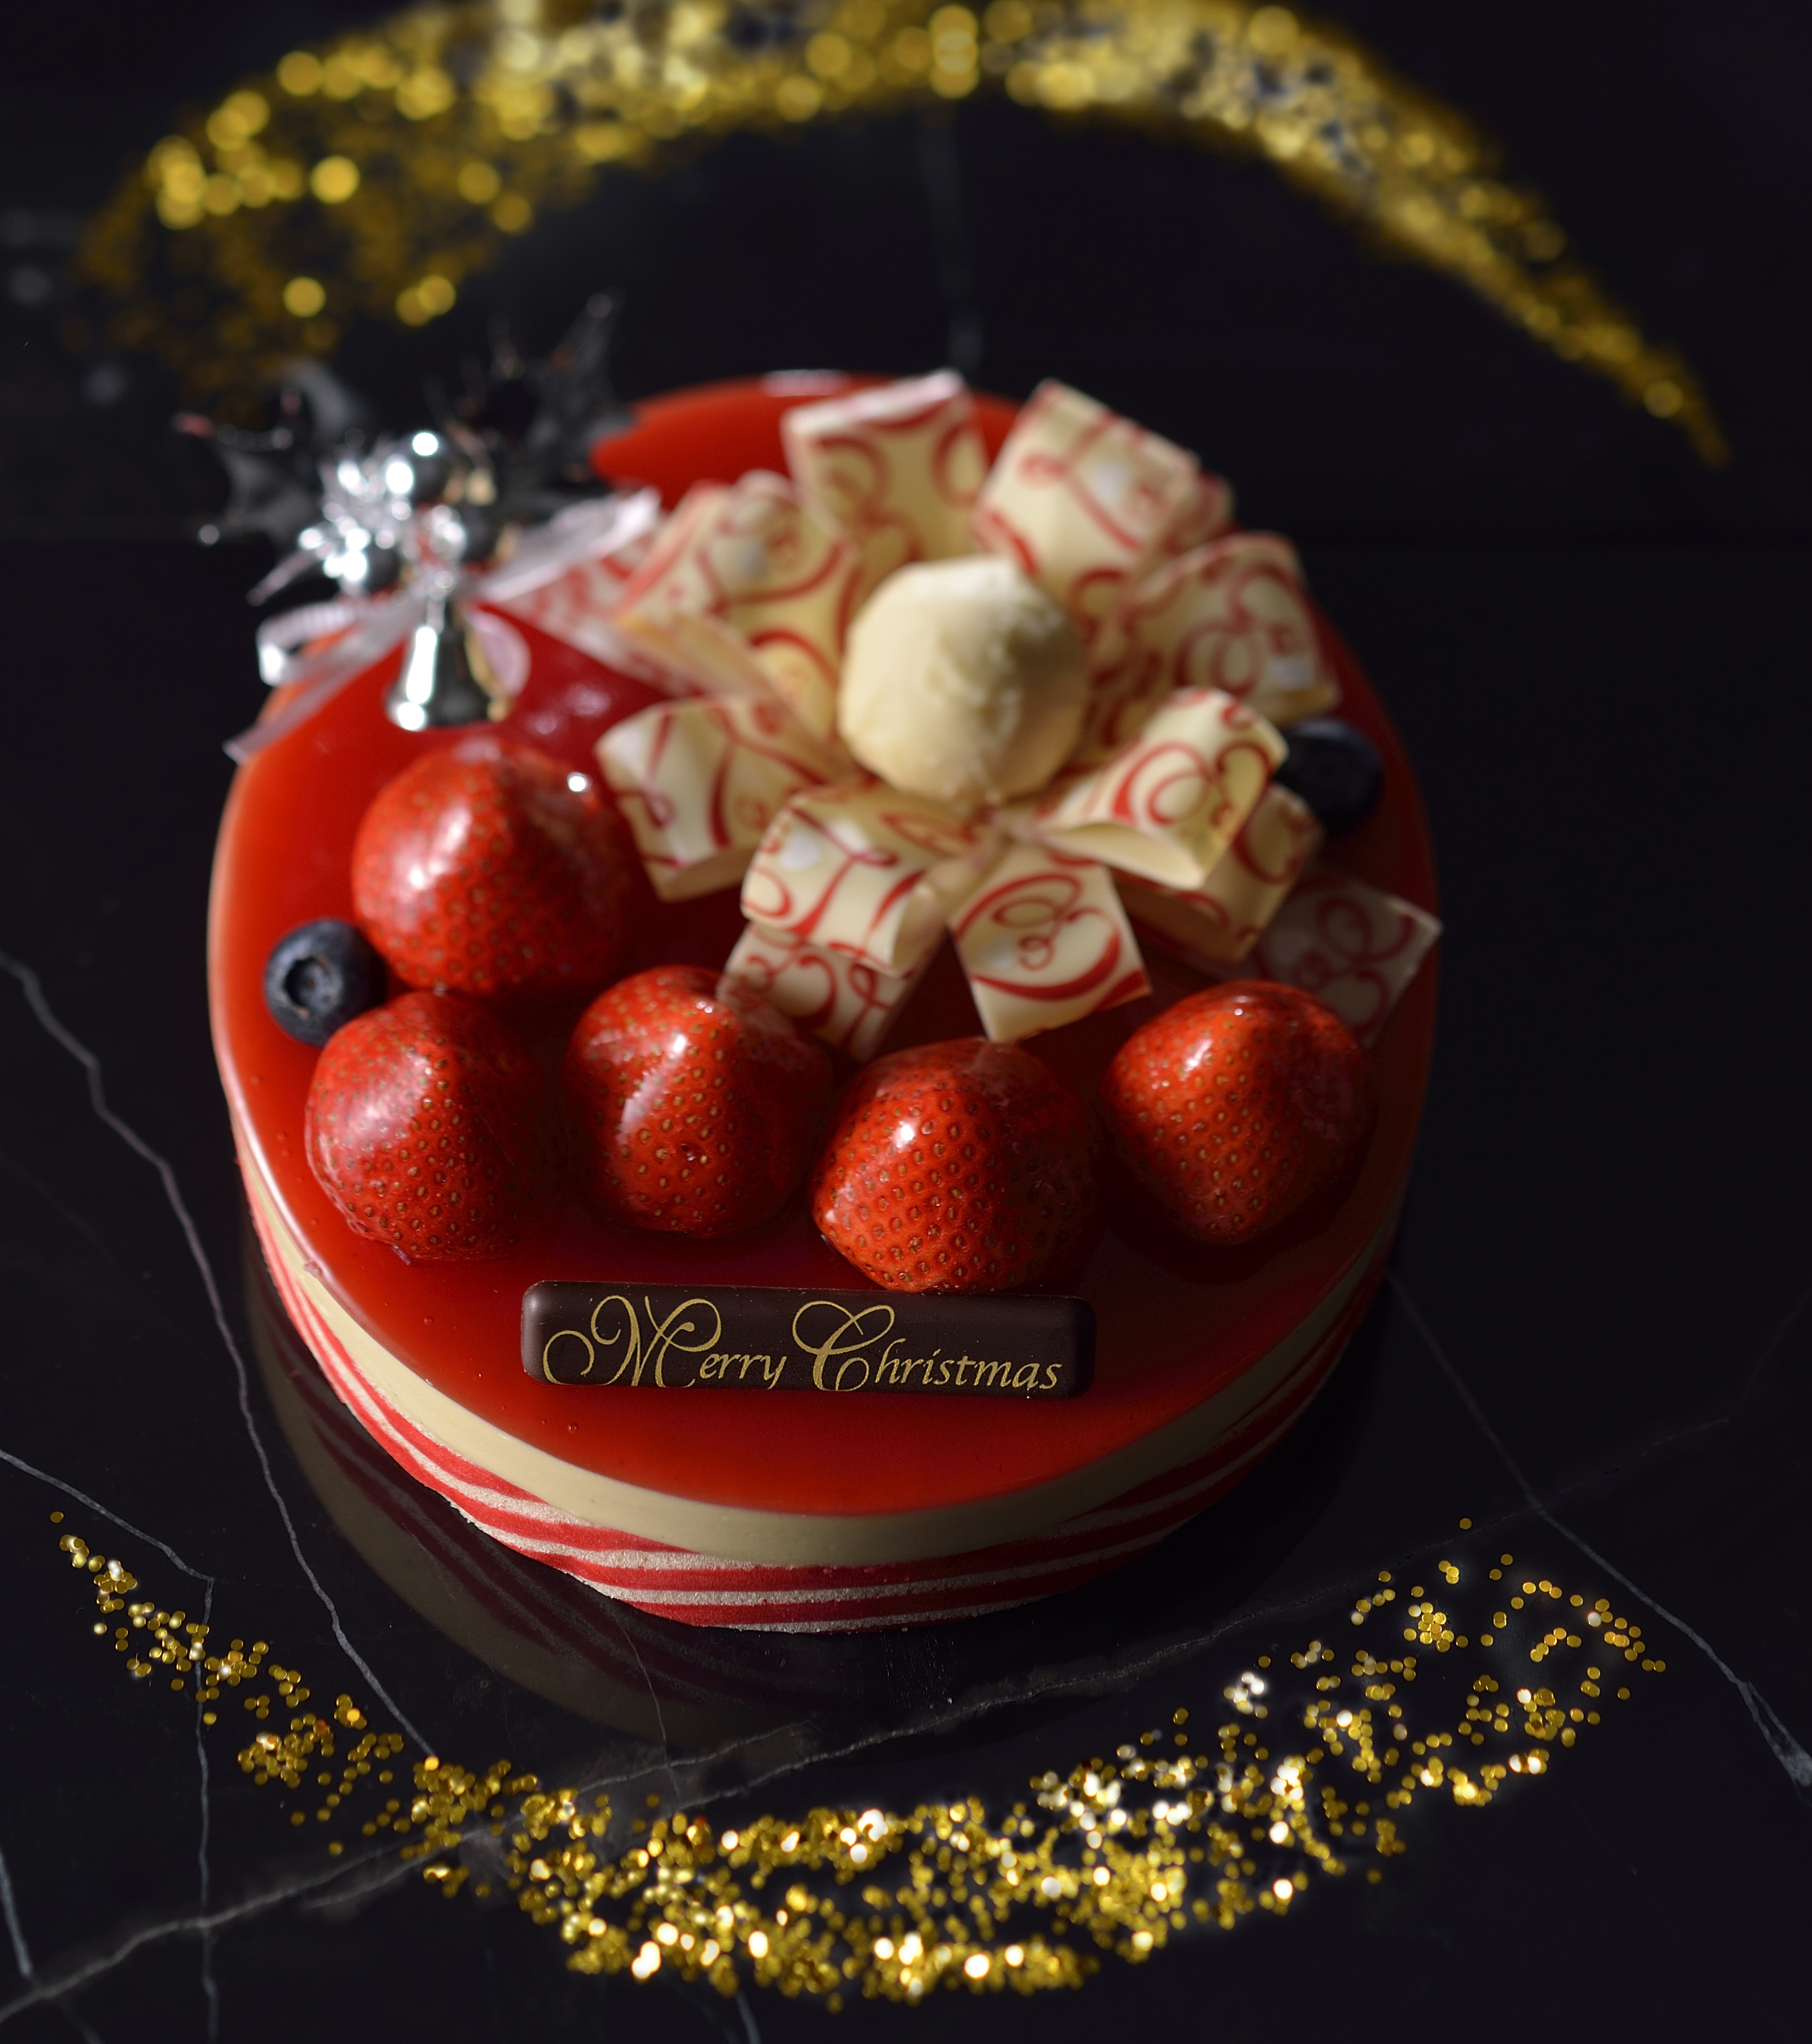 神戸生まれのパティスリー アンテノール 16 クリスマスケーキのご案内 株式会社 エーデルワイスのプレスリリース